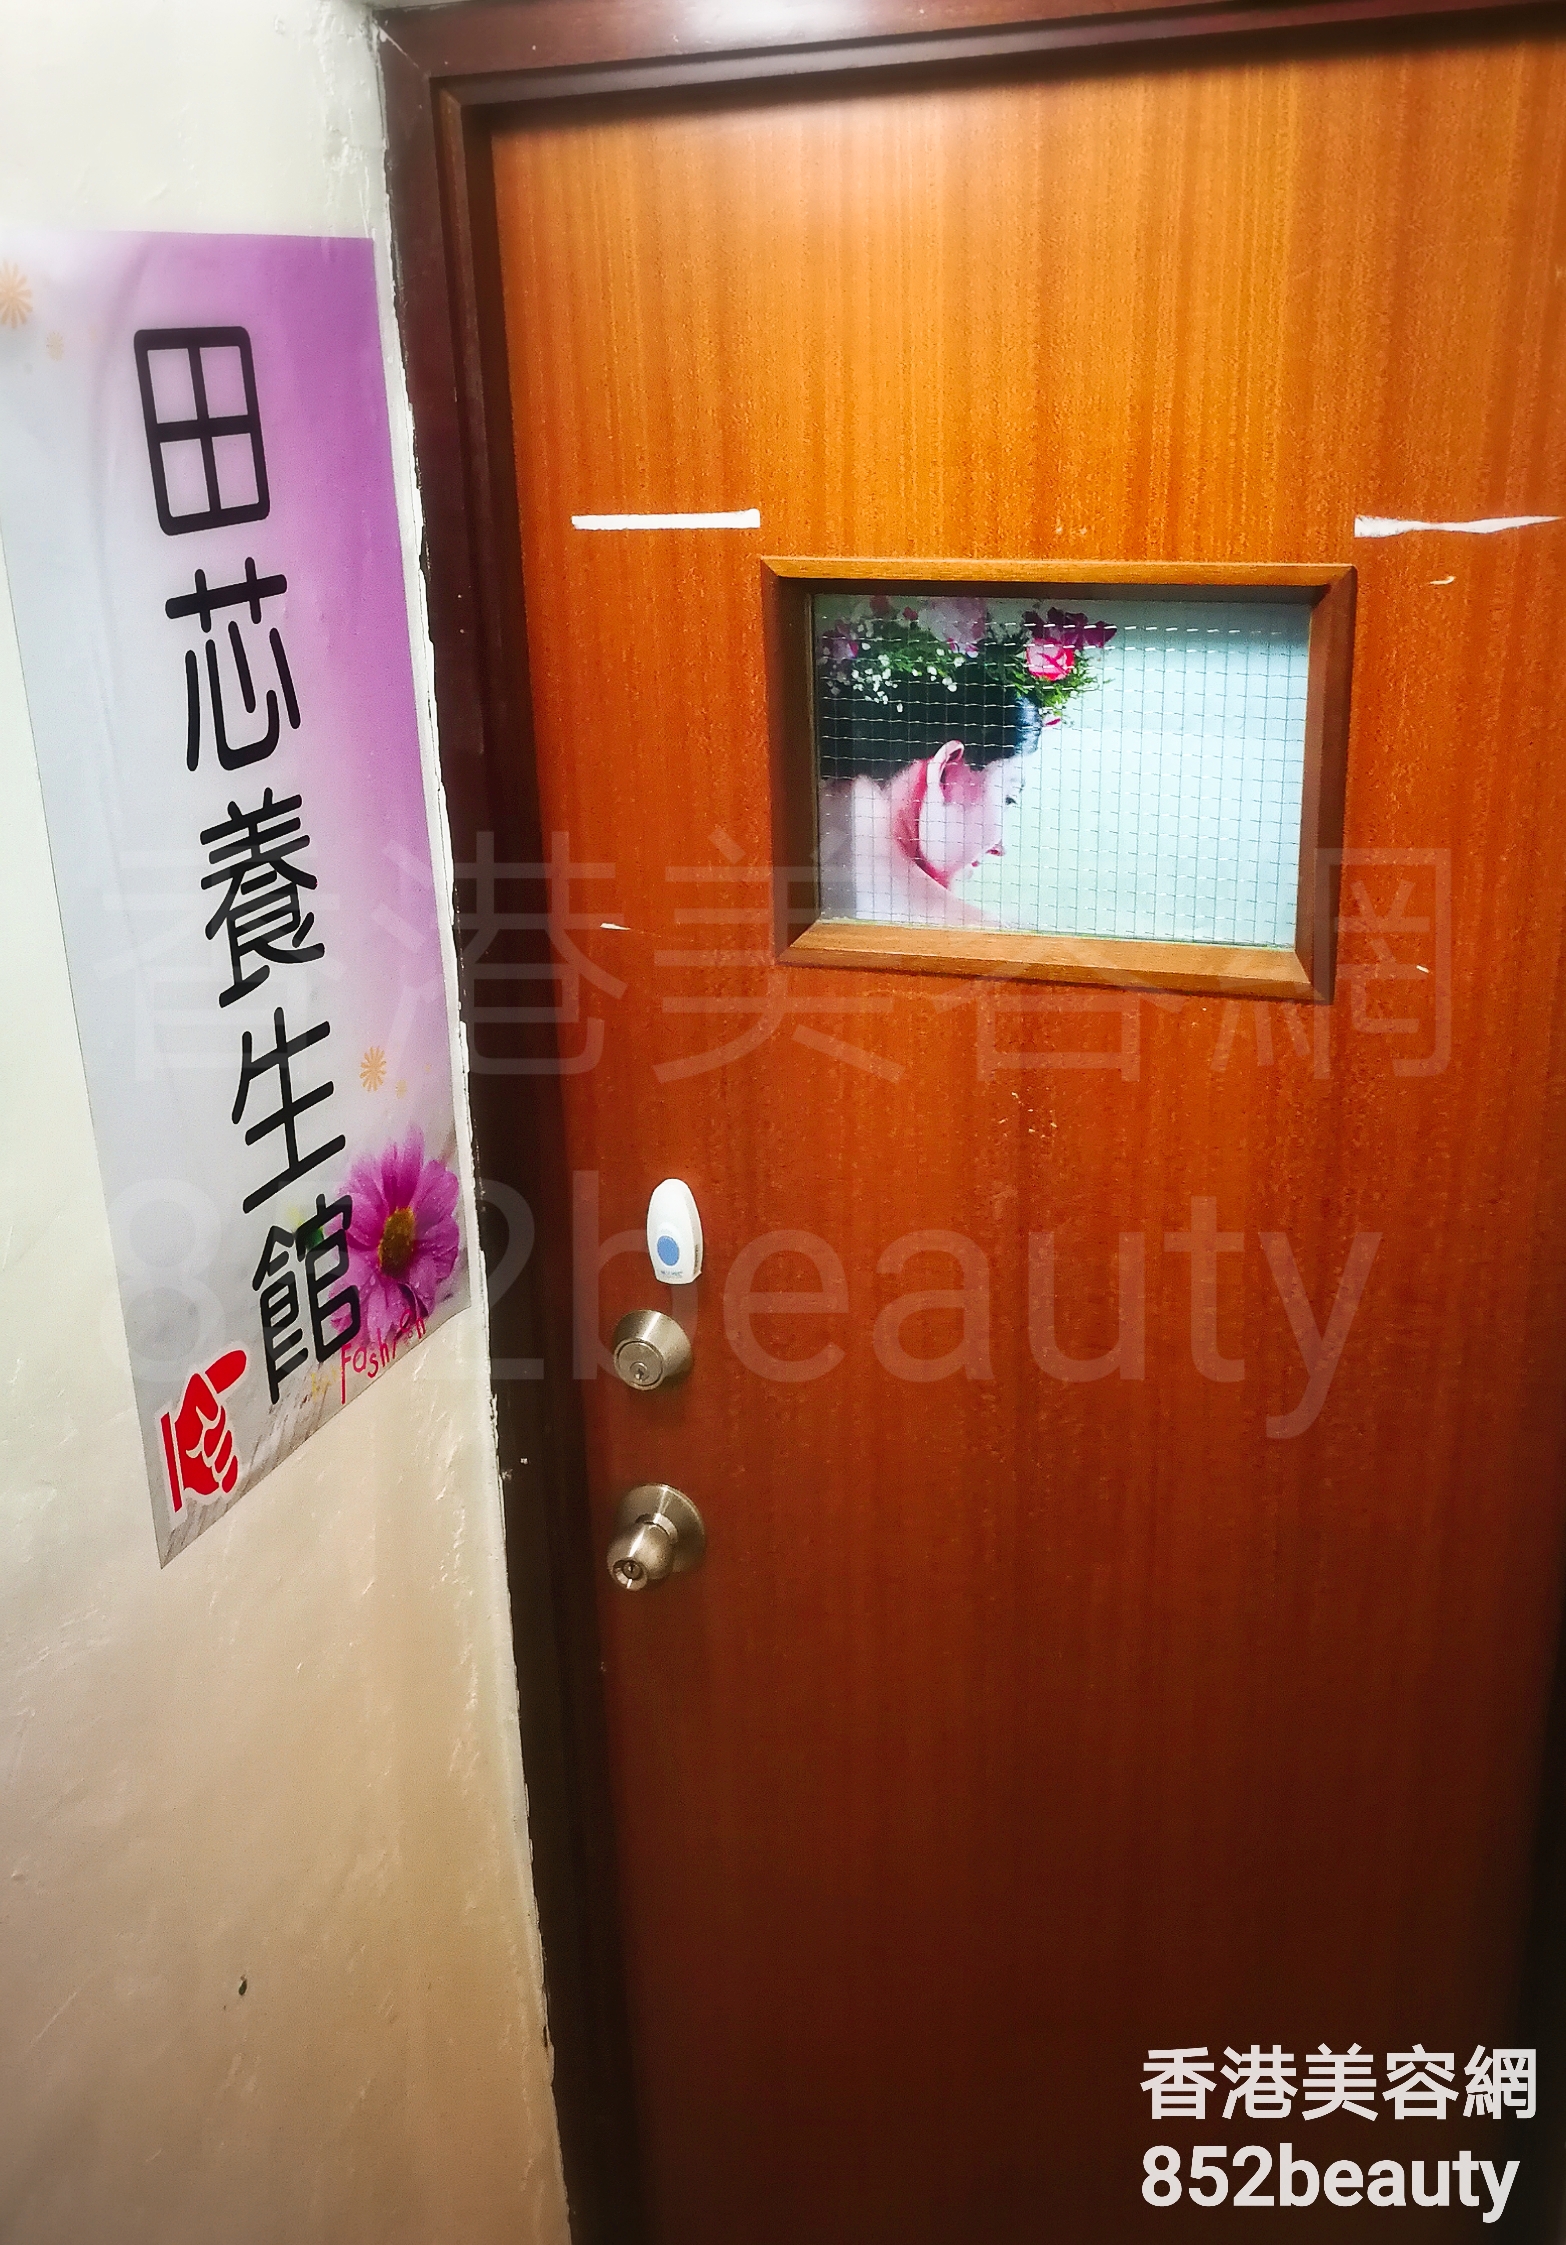 香港美容網 Hong Kong Beauty Salon 美容院 / 美容師: 田芯養生館